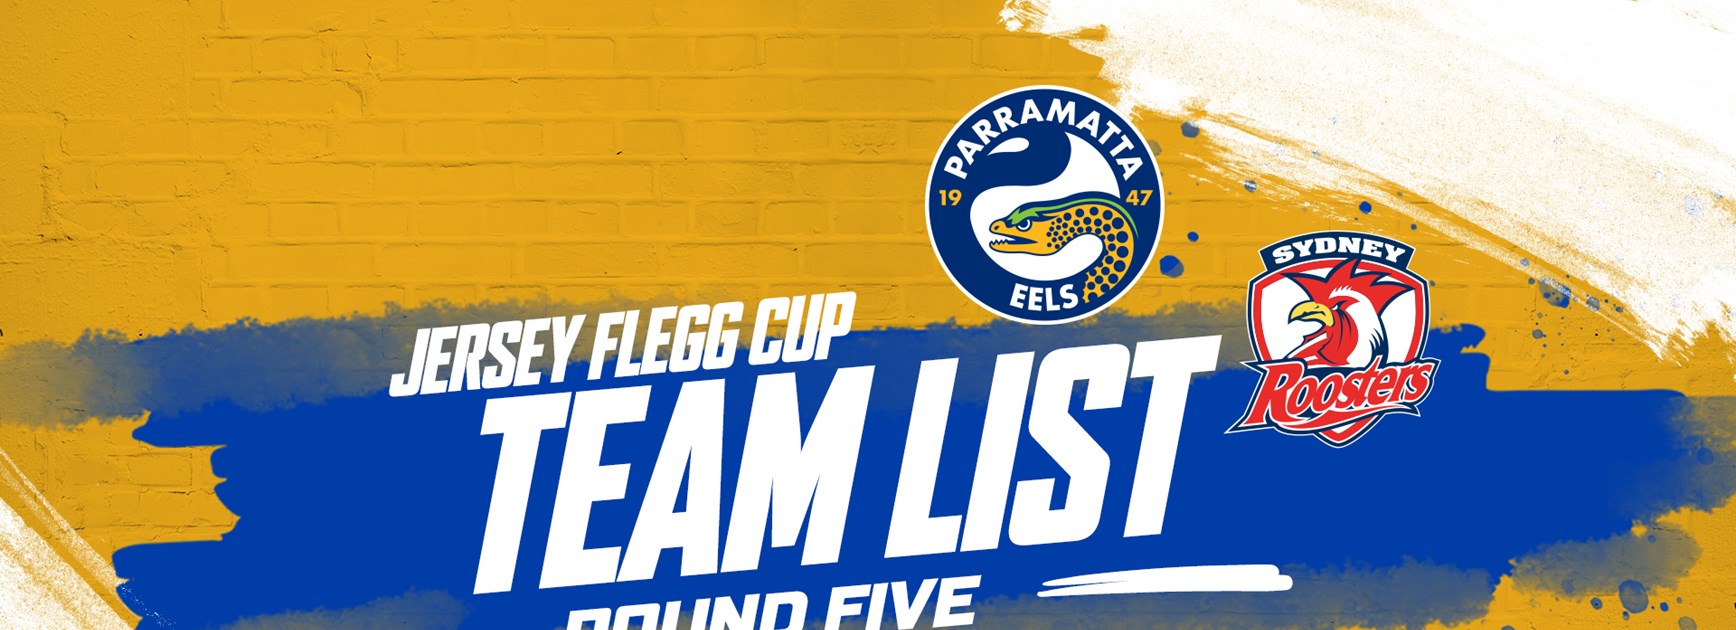 Jersey Flegg Team List - Eels v Roosters, Round Five